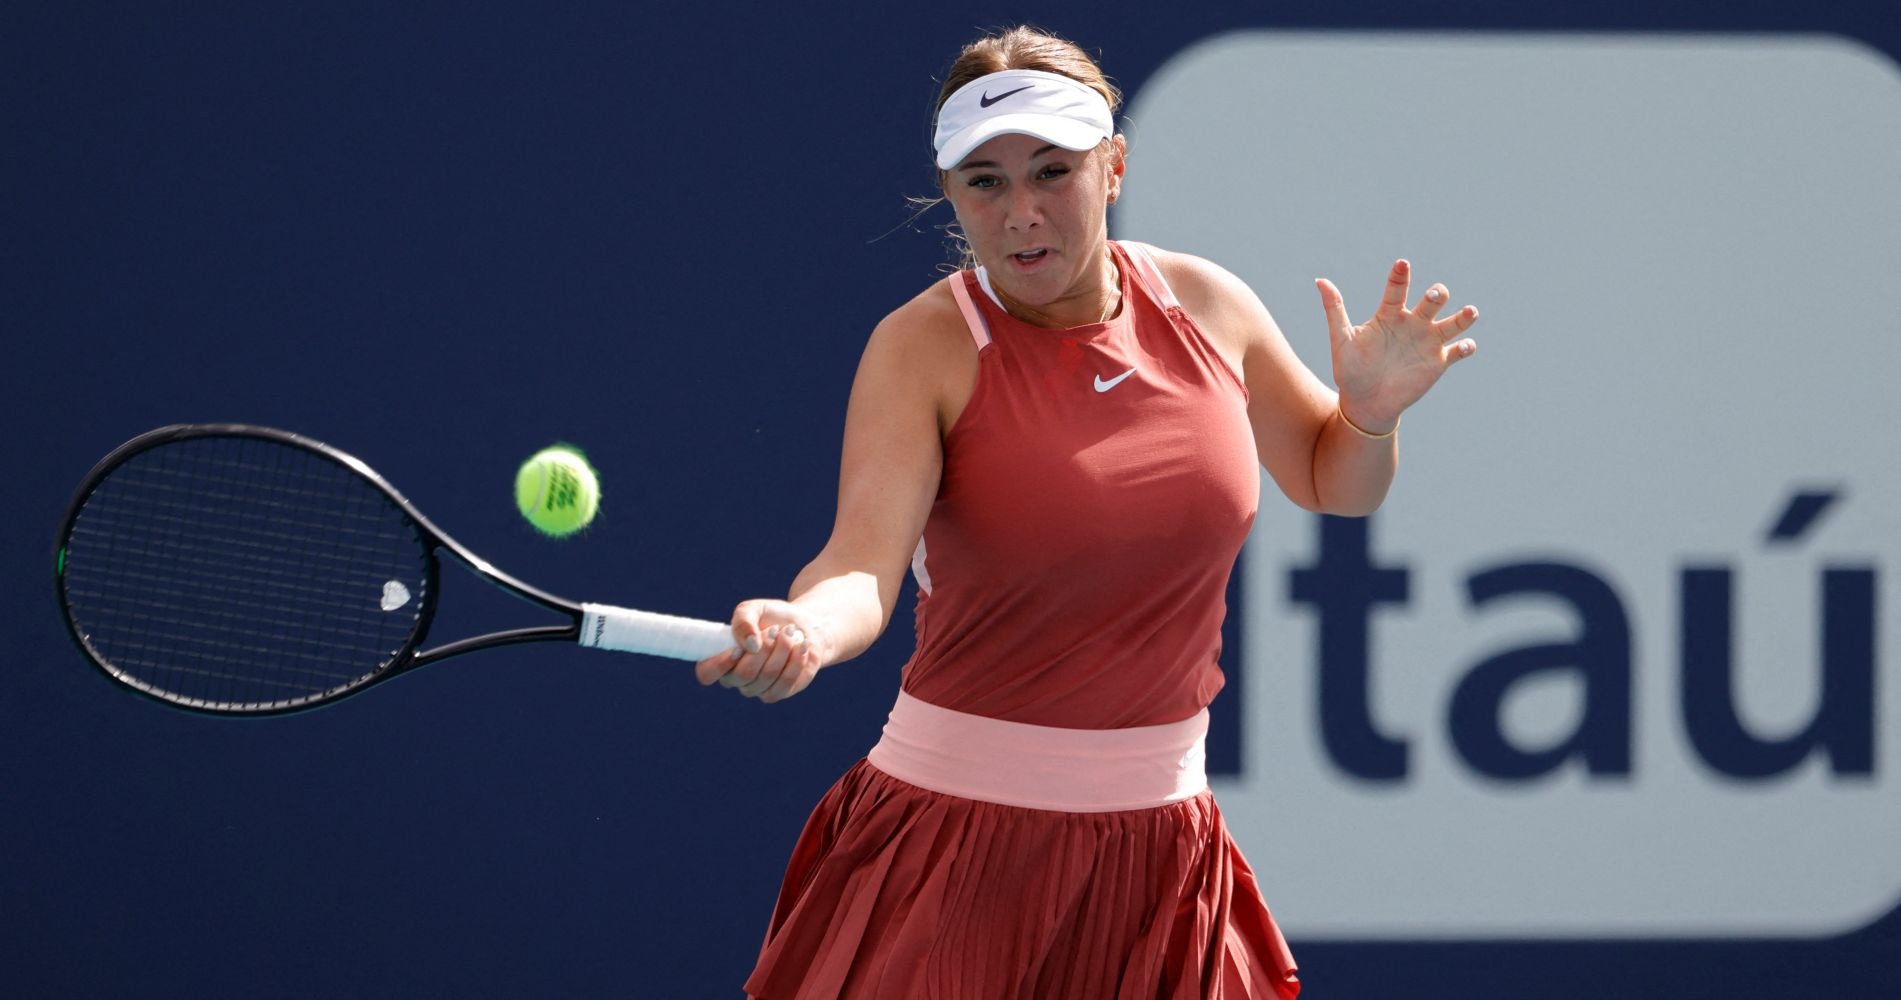 Tennis: Anisimova upsets top seed Sabalenka in Charleston